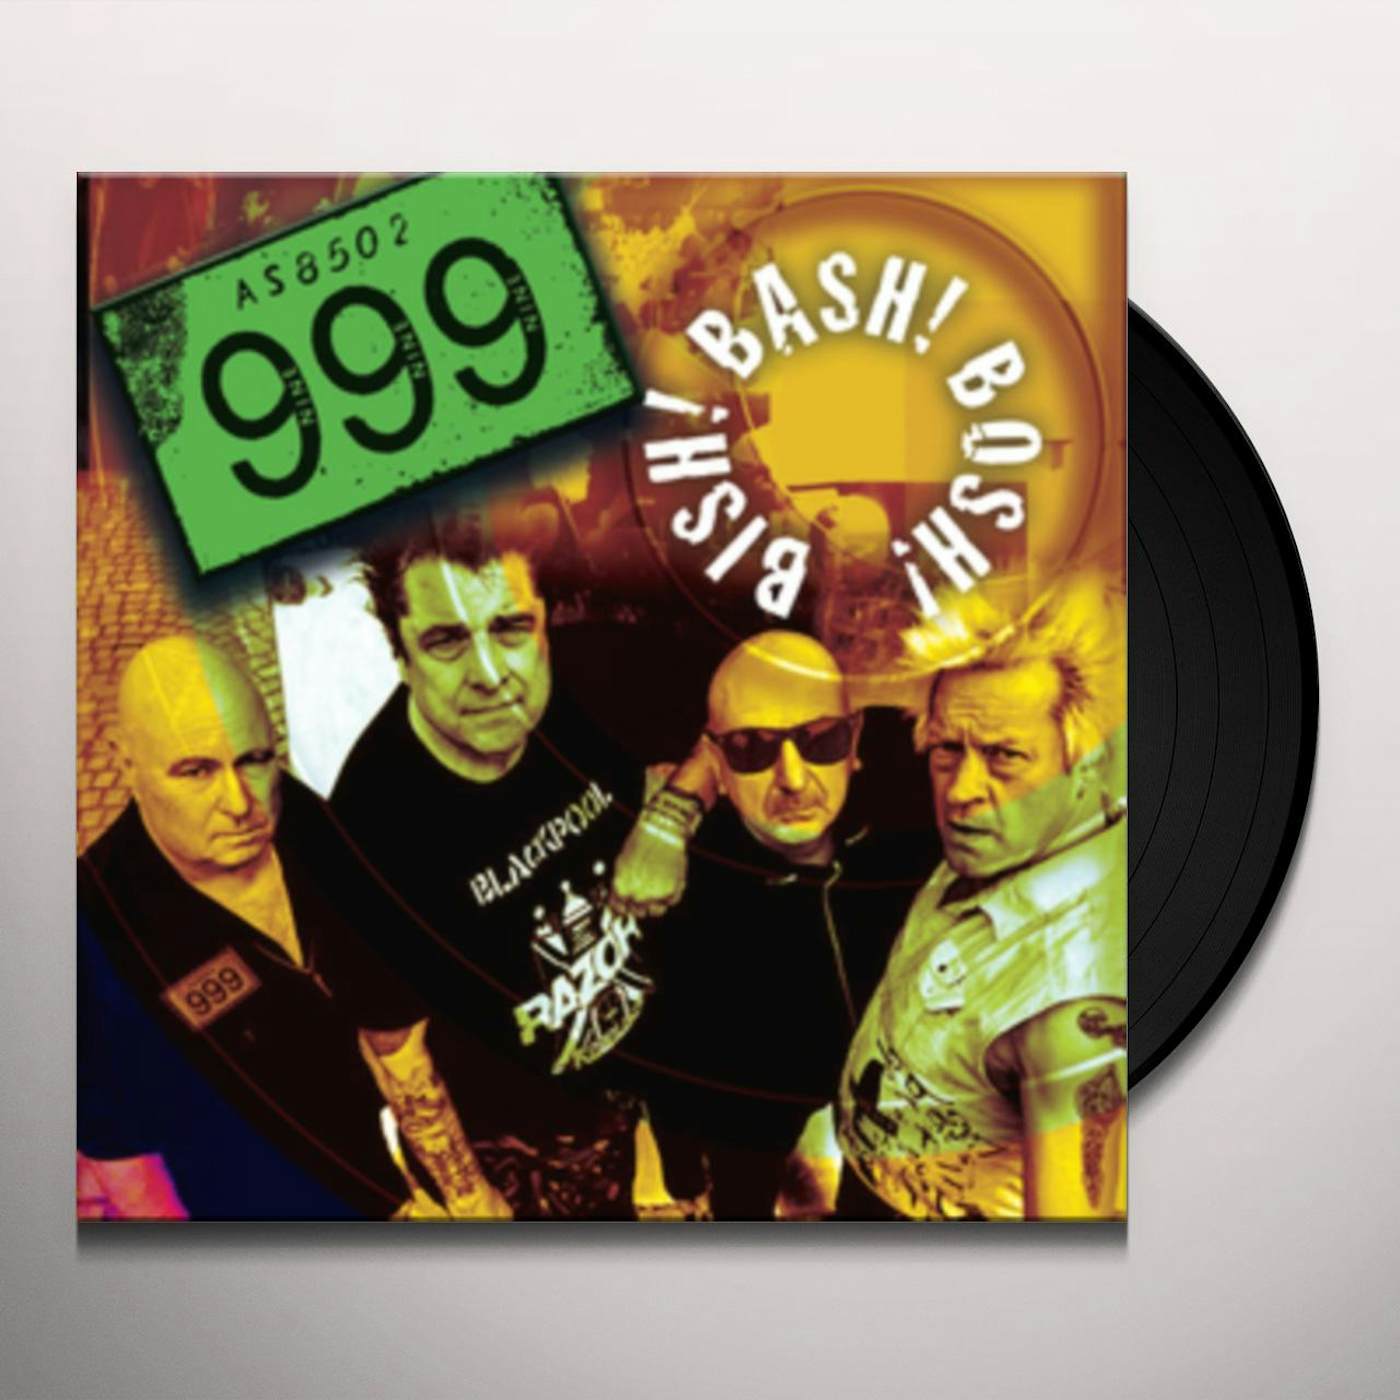 999 Bish! Bash! Bosh! Vinyl Record